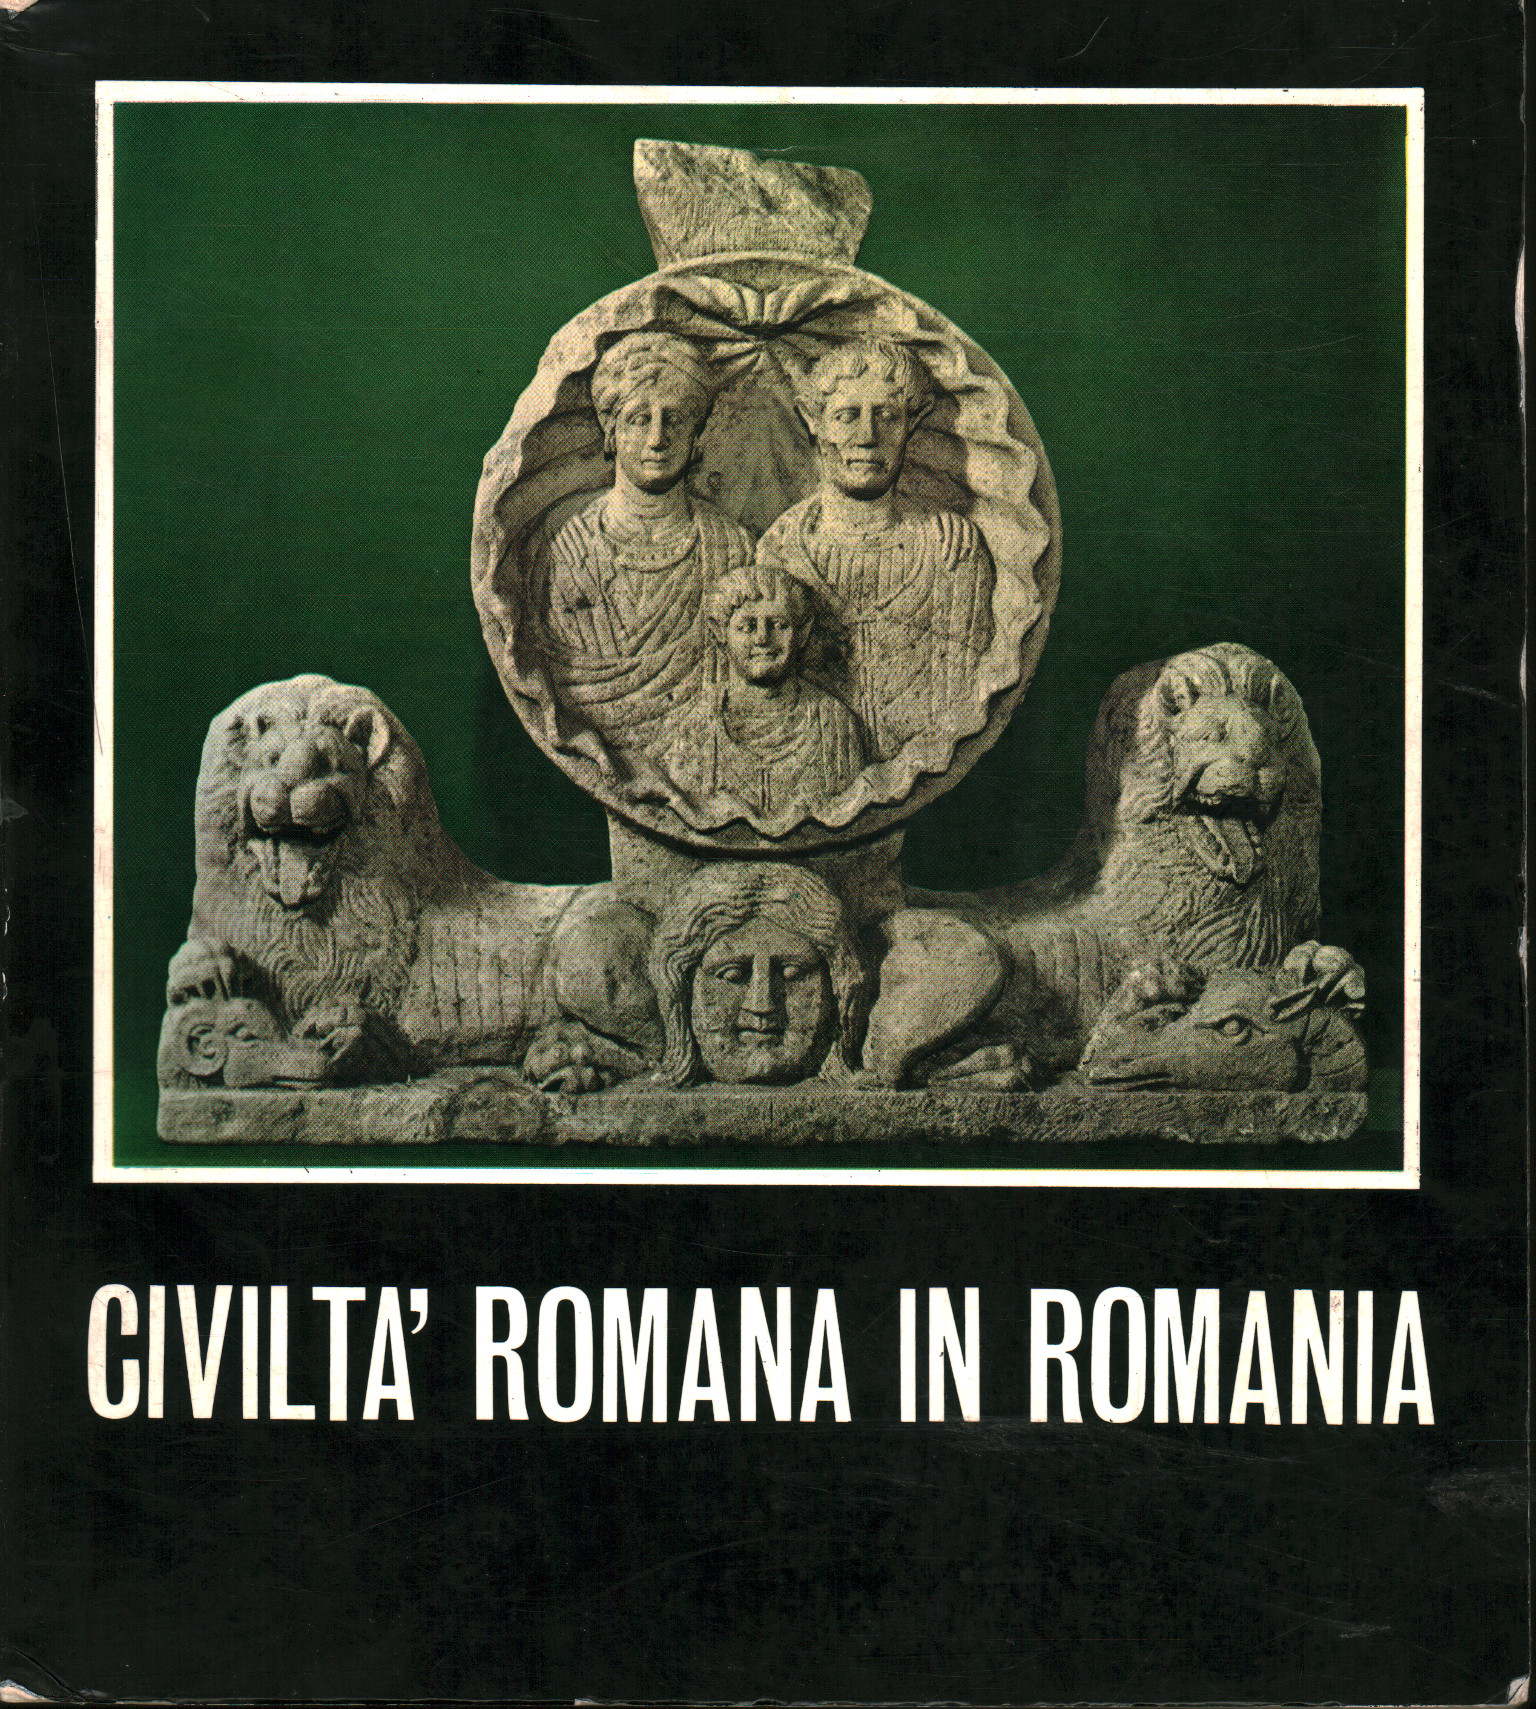 Roman civilization in Romania